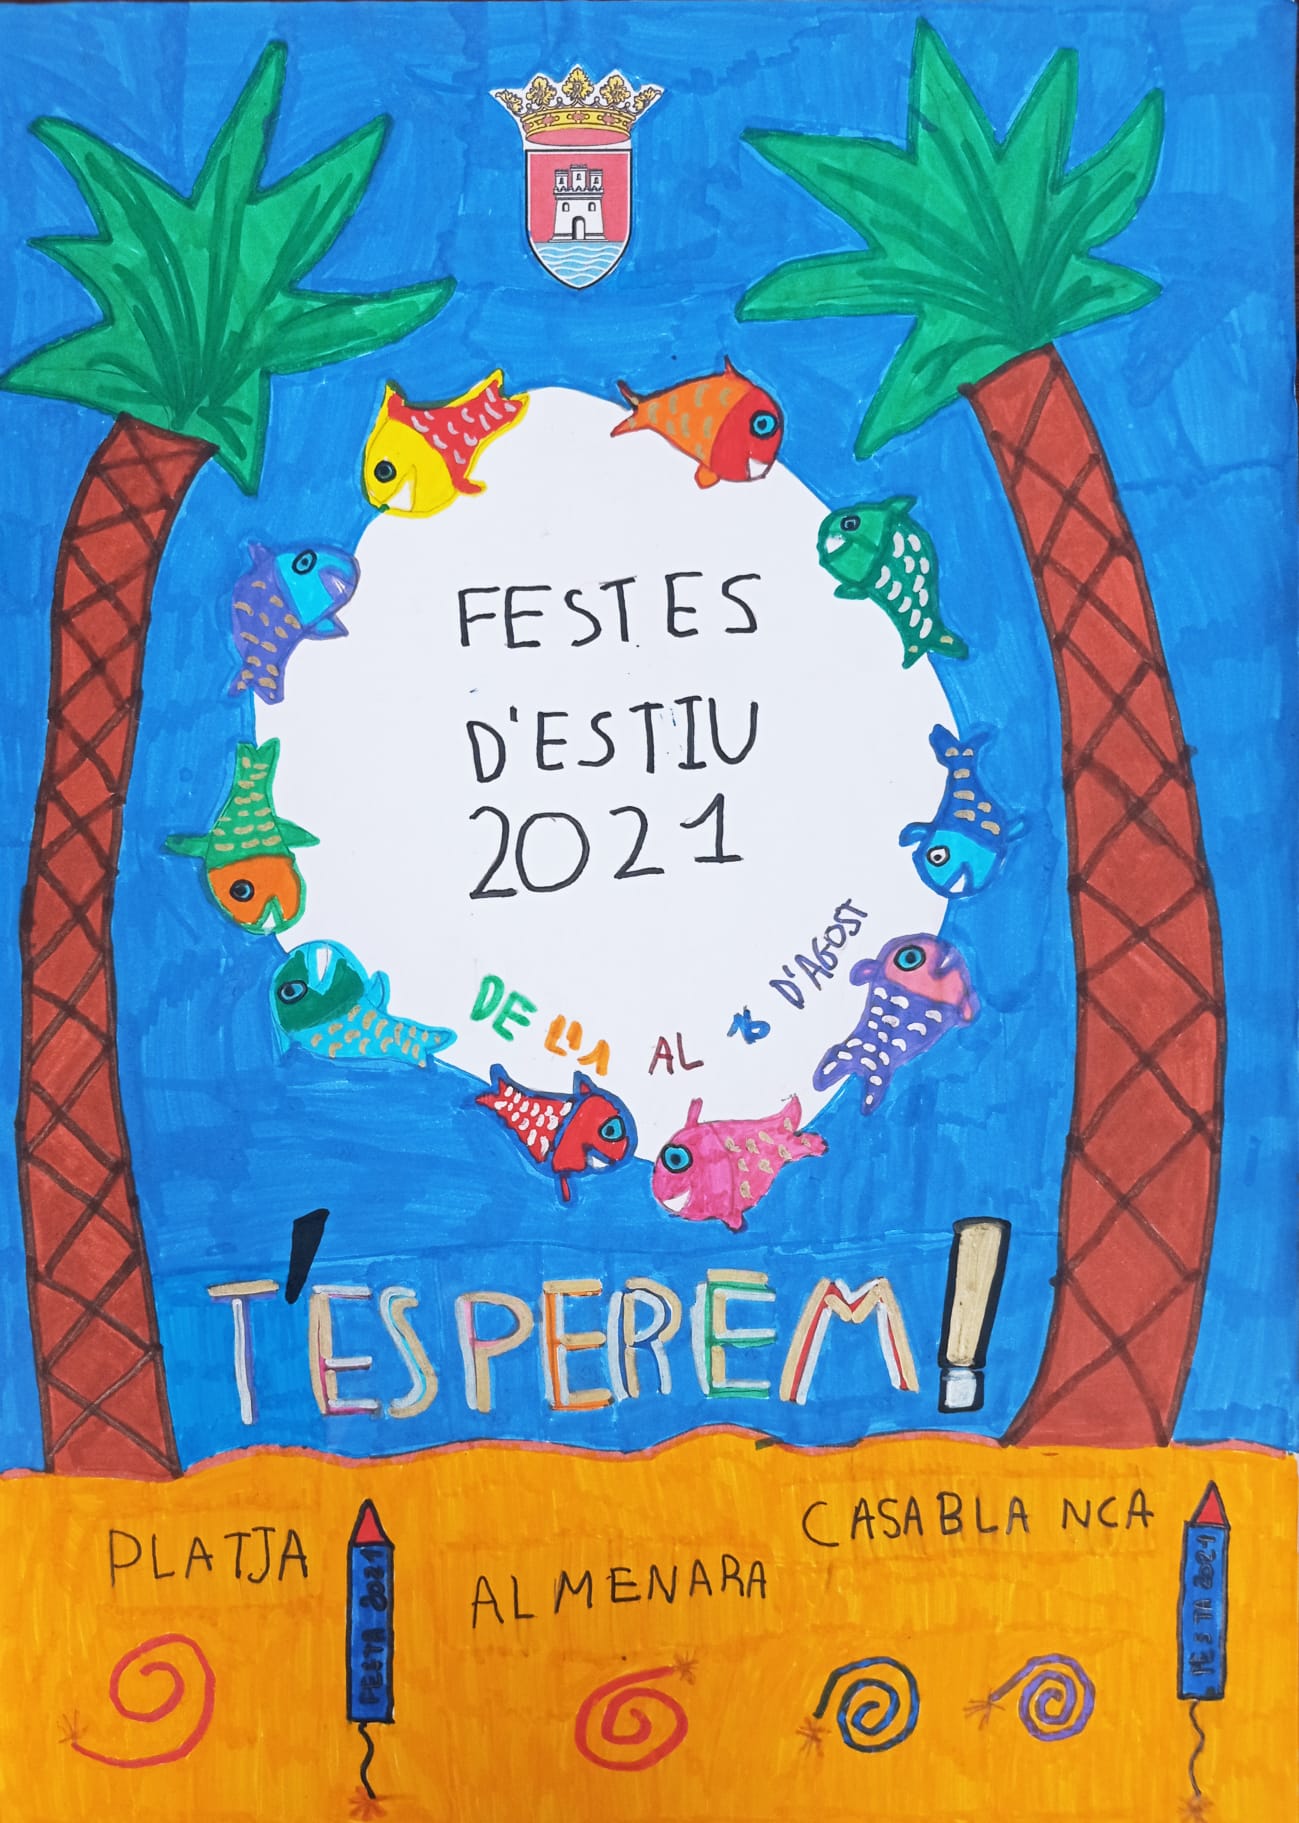 Almenara ya tiene los carteles para las fiestas de verano y fiestas patronales